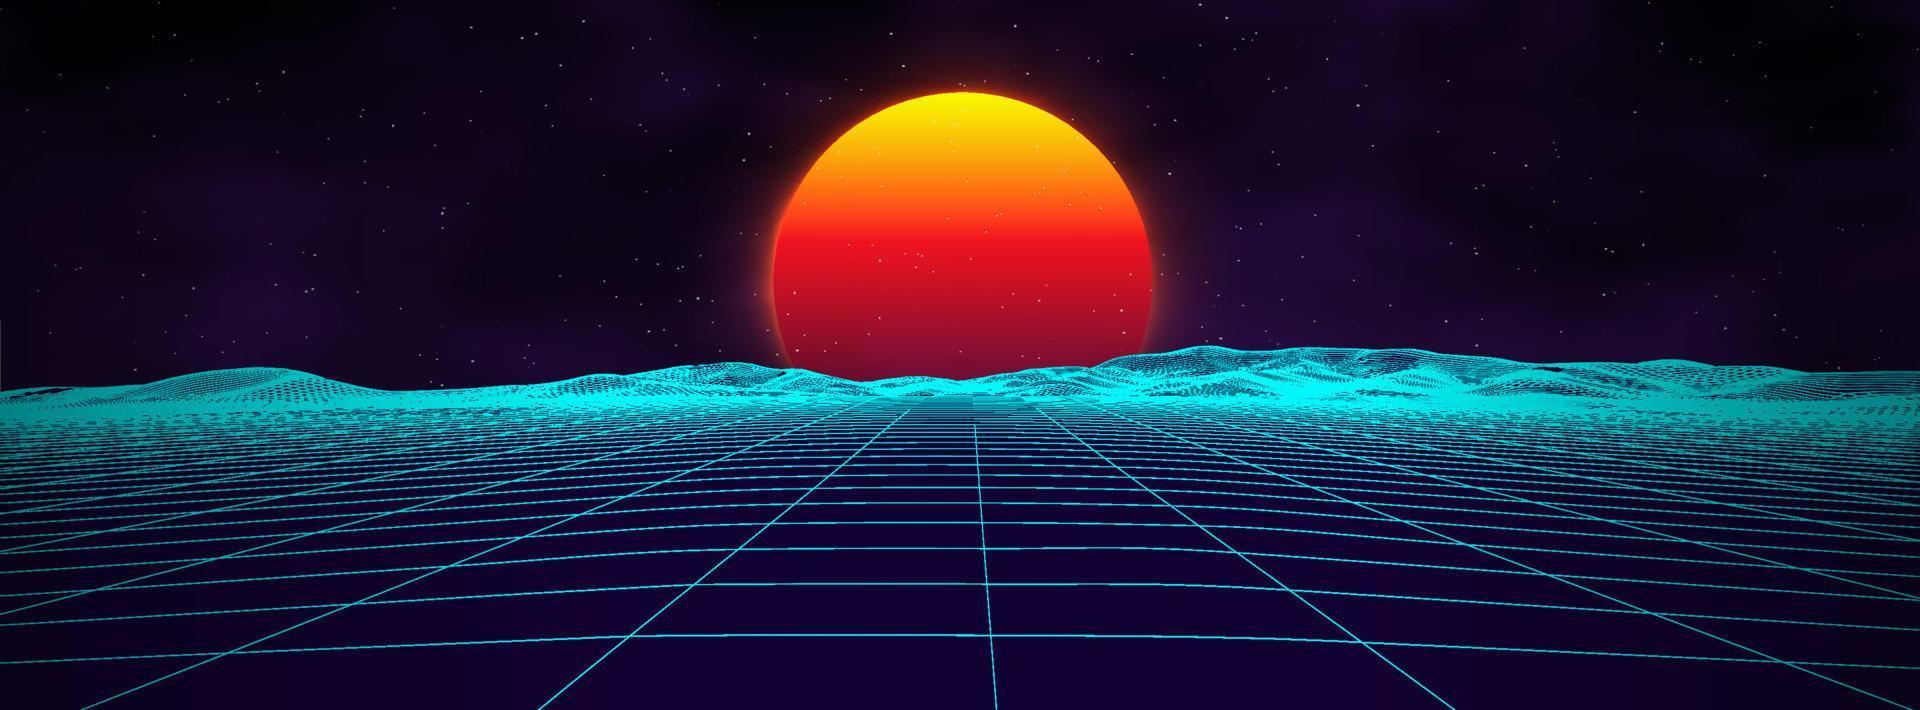 Paysage rétro de fond des années 80. style néon futuriste des années 1980. surface cybernétique. fond de fête. fond de paysage d'été de science-fiction rétro des années 80. vecteur